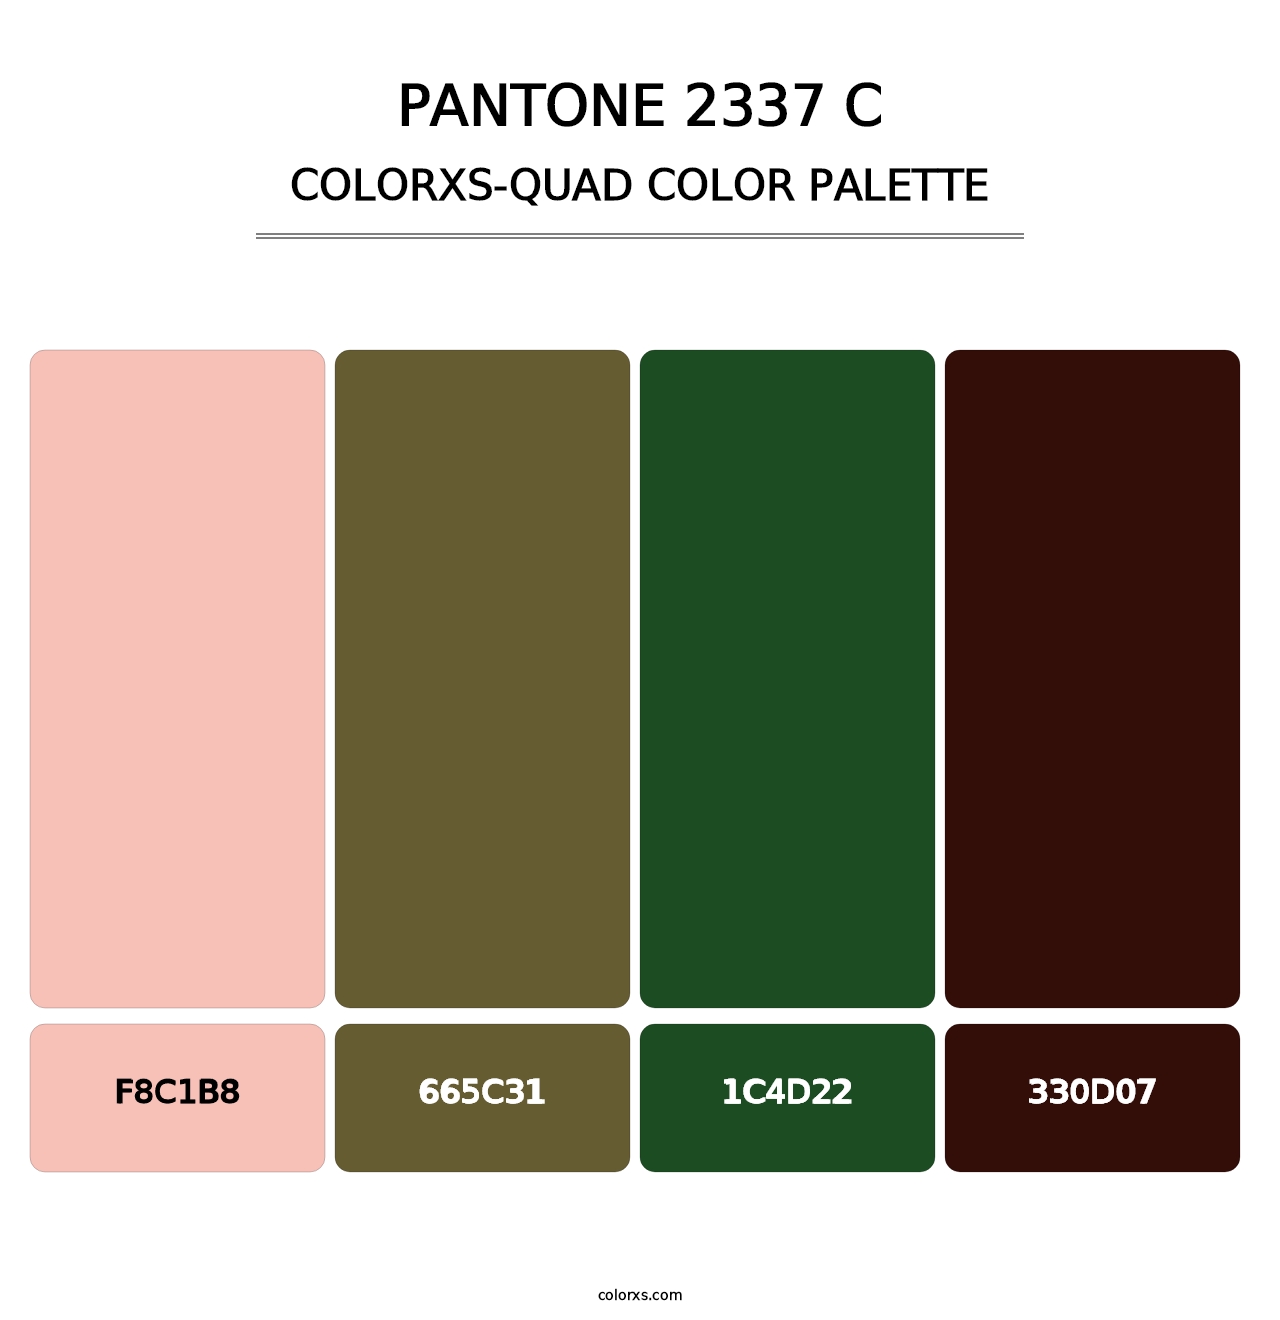 PANTONE 2337 C - Colorxs Quad Palette